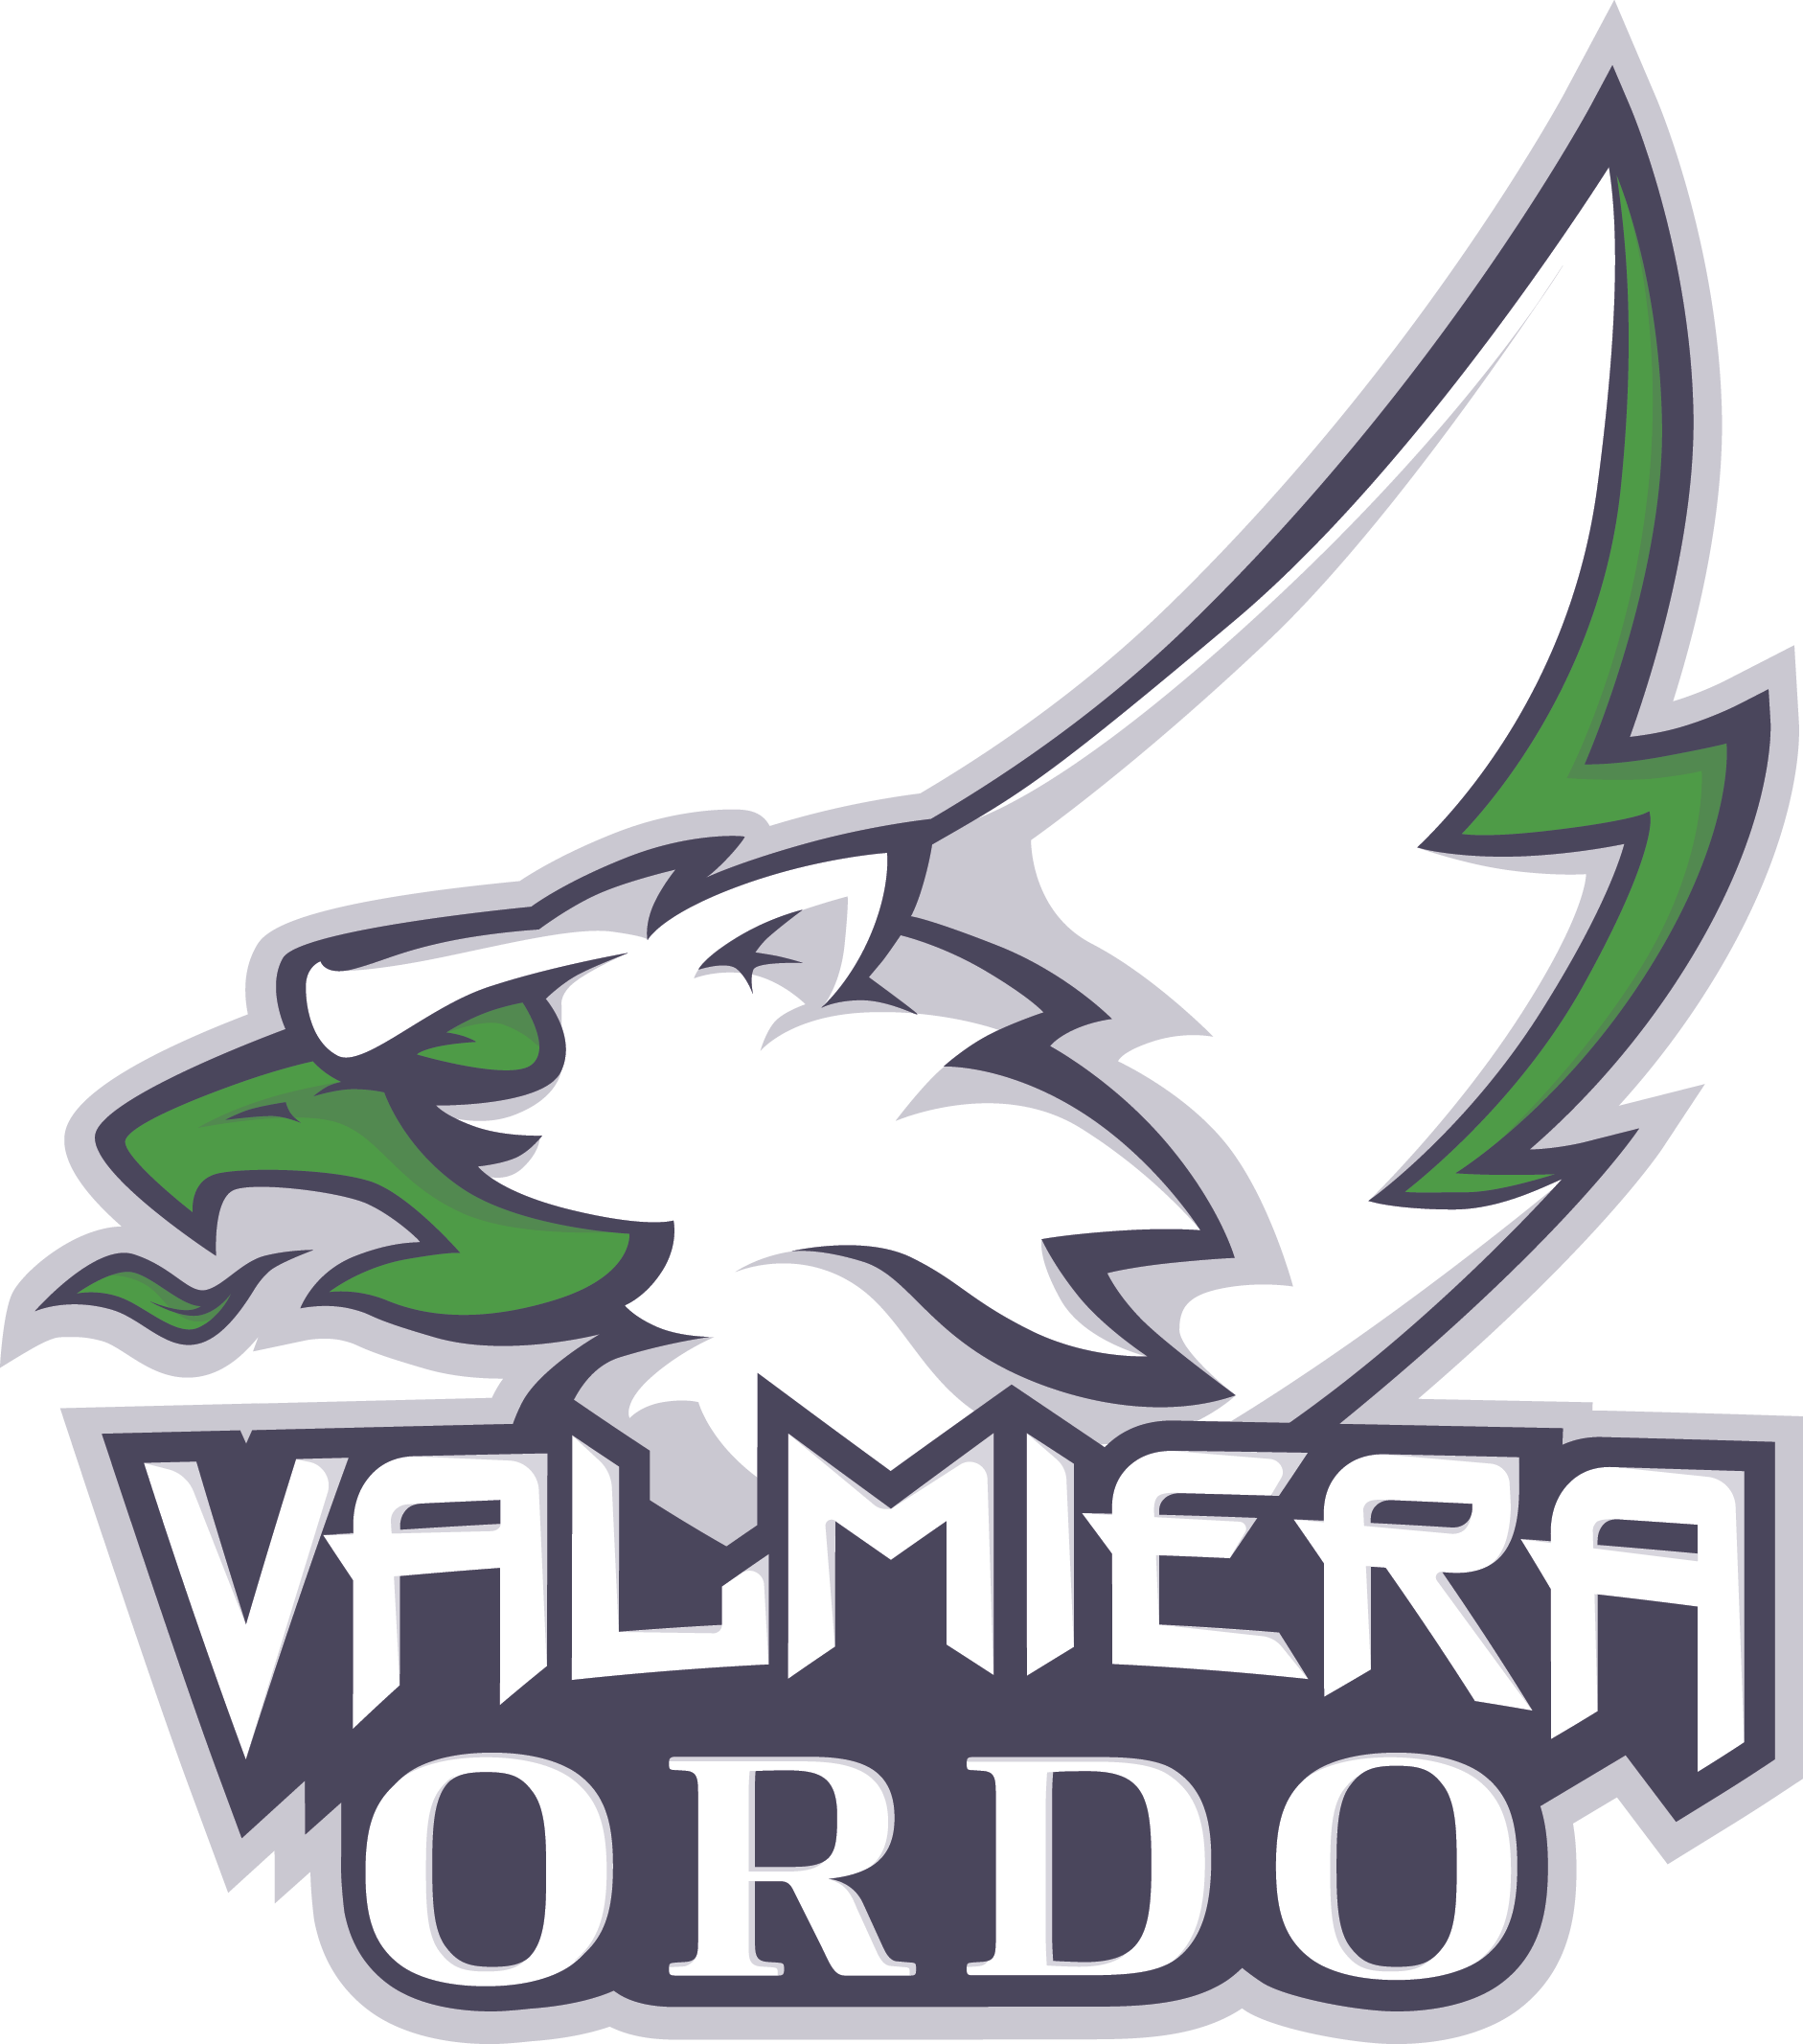 Valmiera Ordo logo, logotype